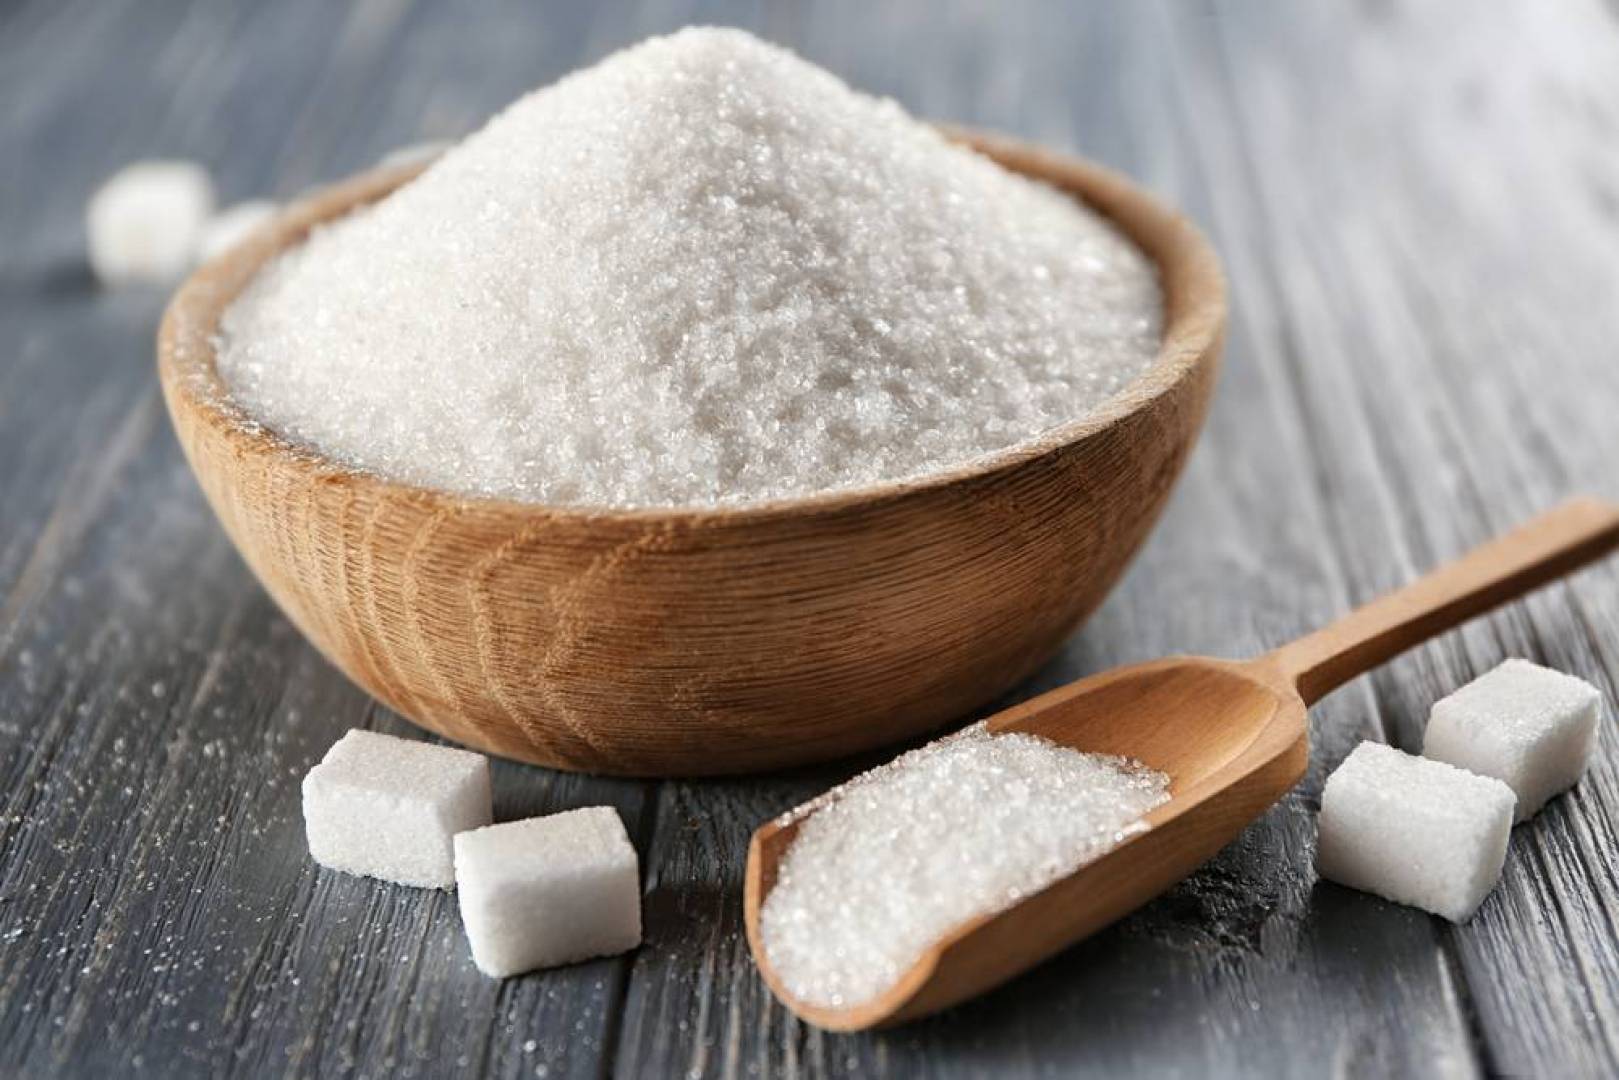 كيف تتخلص من أضرار السكر بطريقة آمنة؟